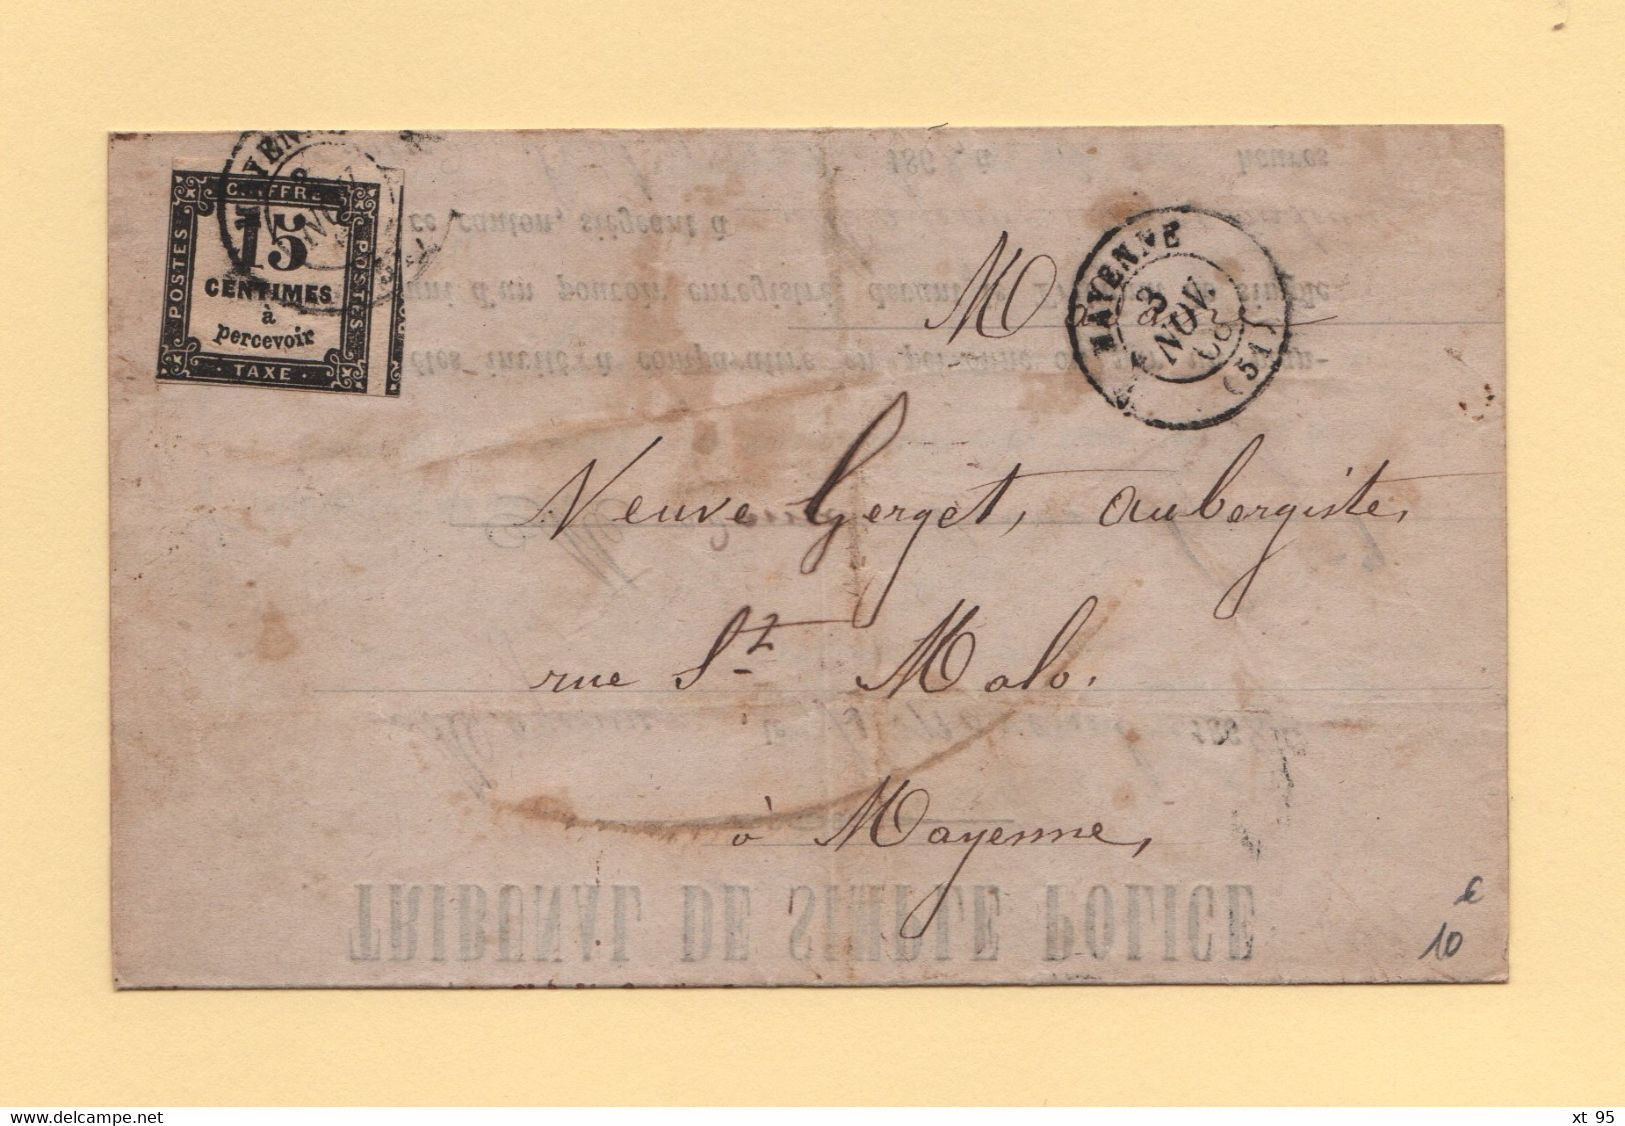 Mayenne - 51 - 3 Nov 1868 - Tribunal De Police - Defaut D Eclairage D Une Voiture - Timbre Taxe - 1859-1959 Covers & Documents